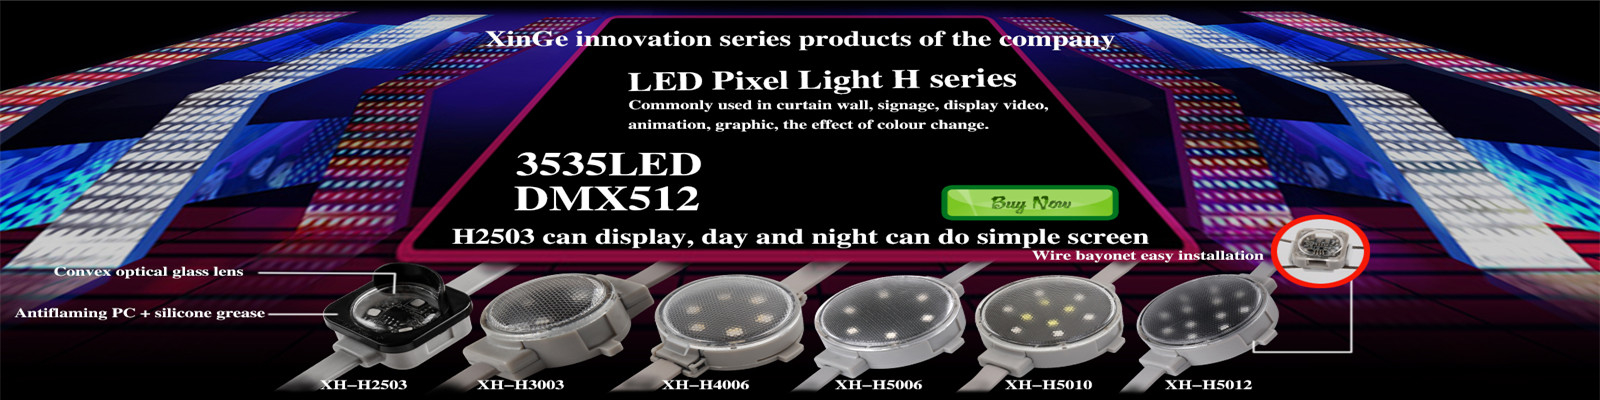 LED Point Light